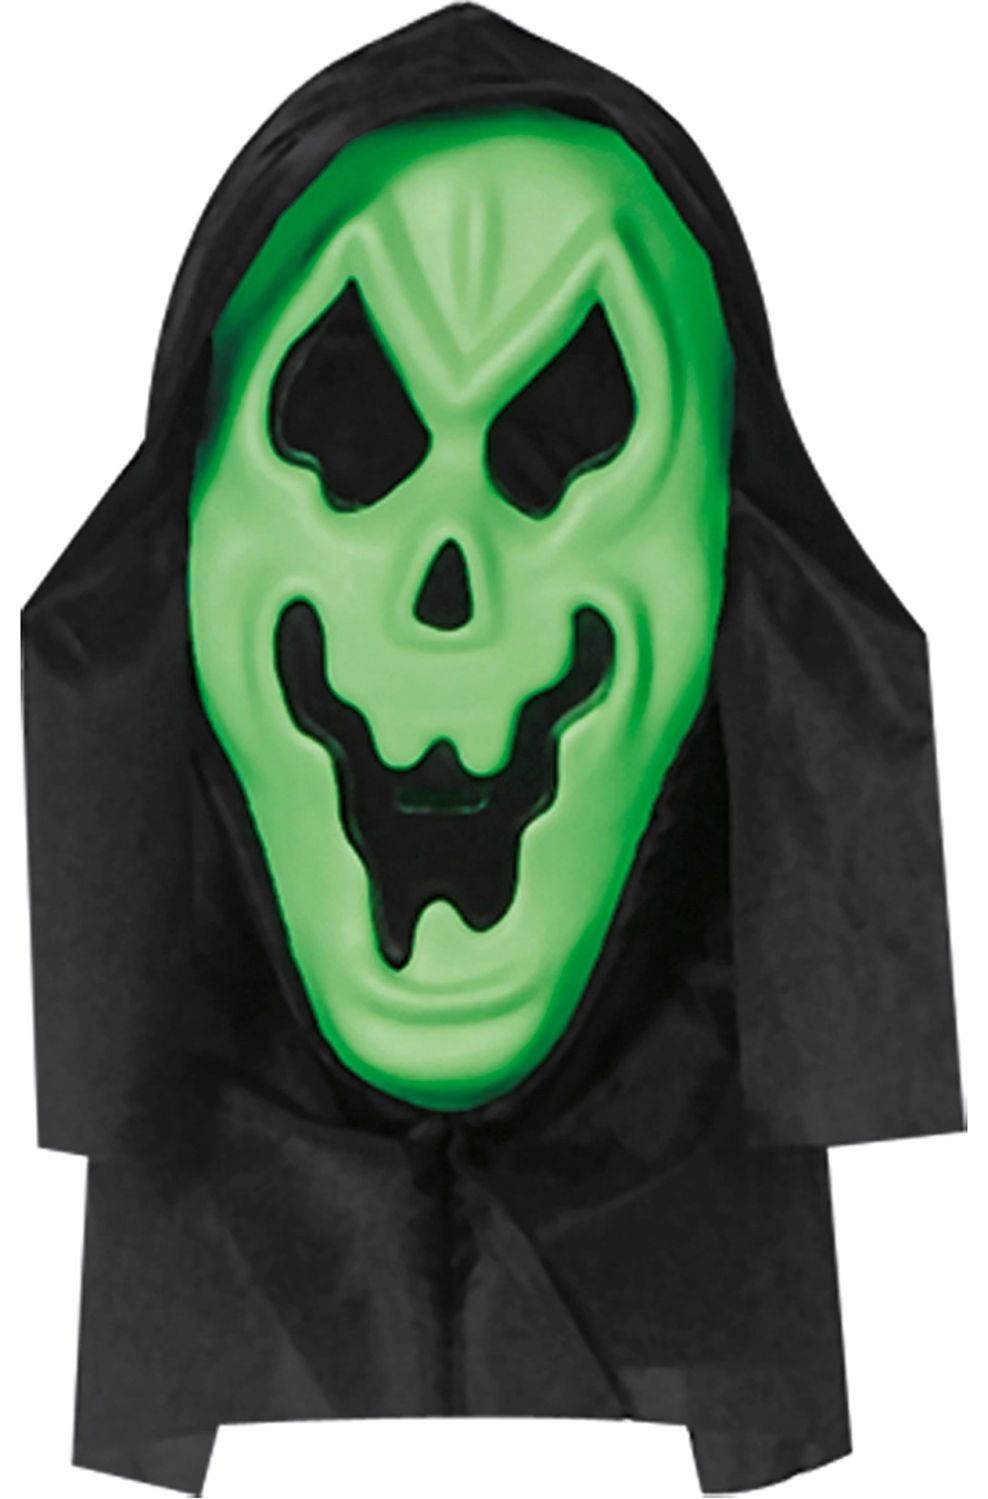 Schreeuwend halloween spook masker groen